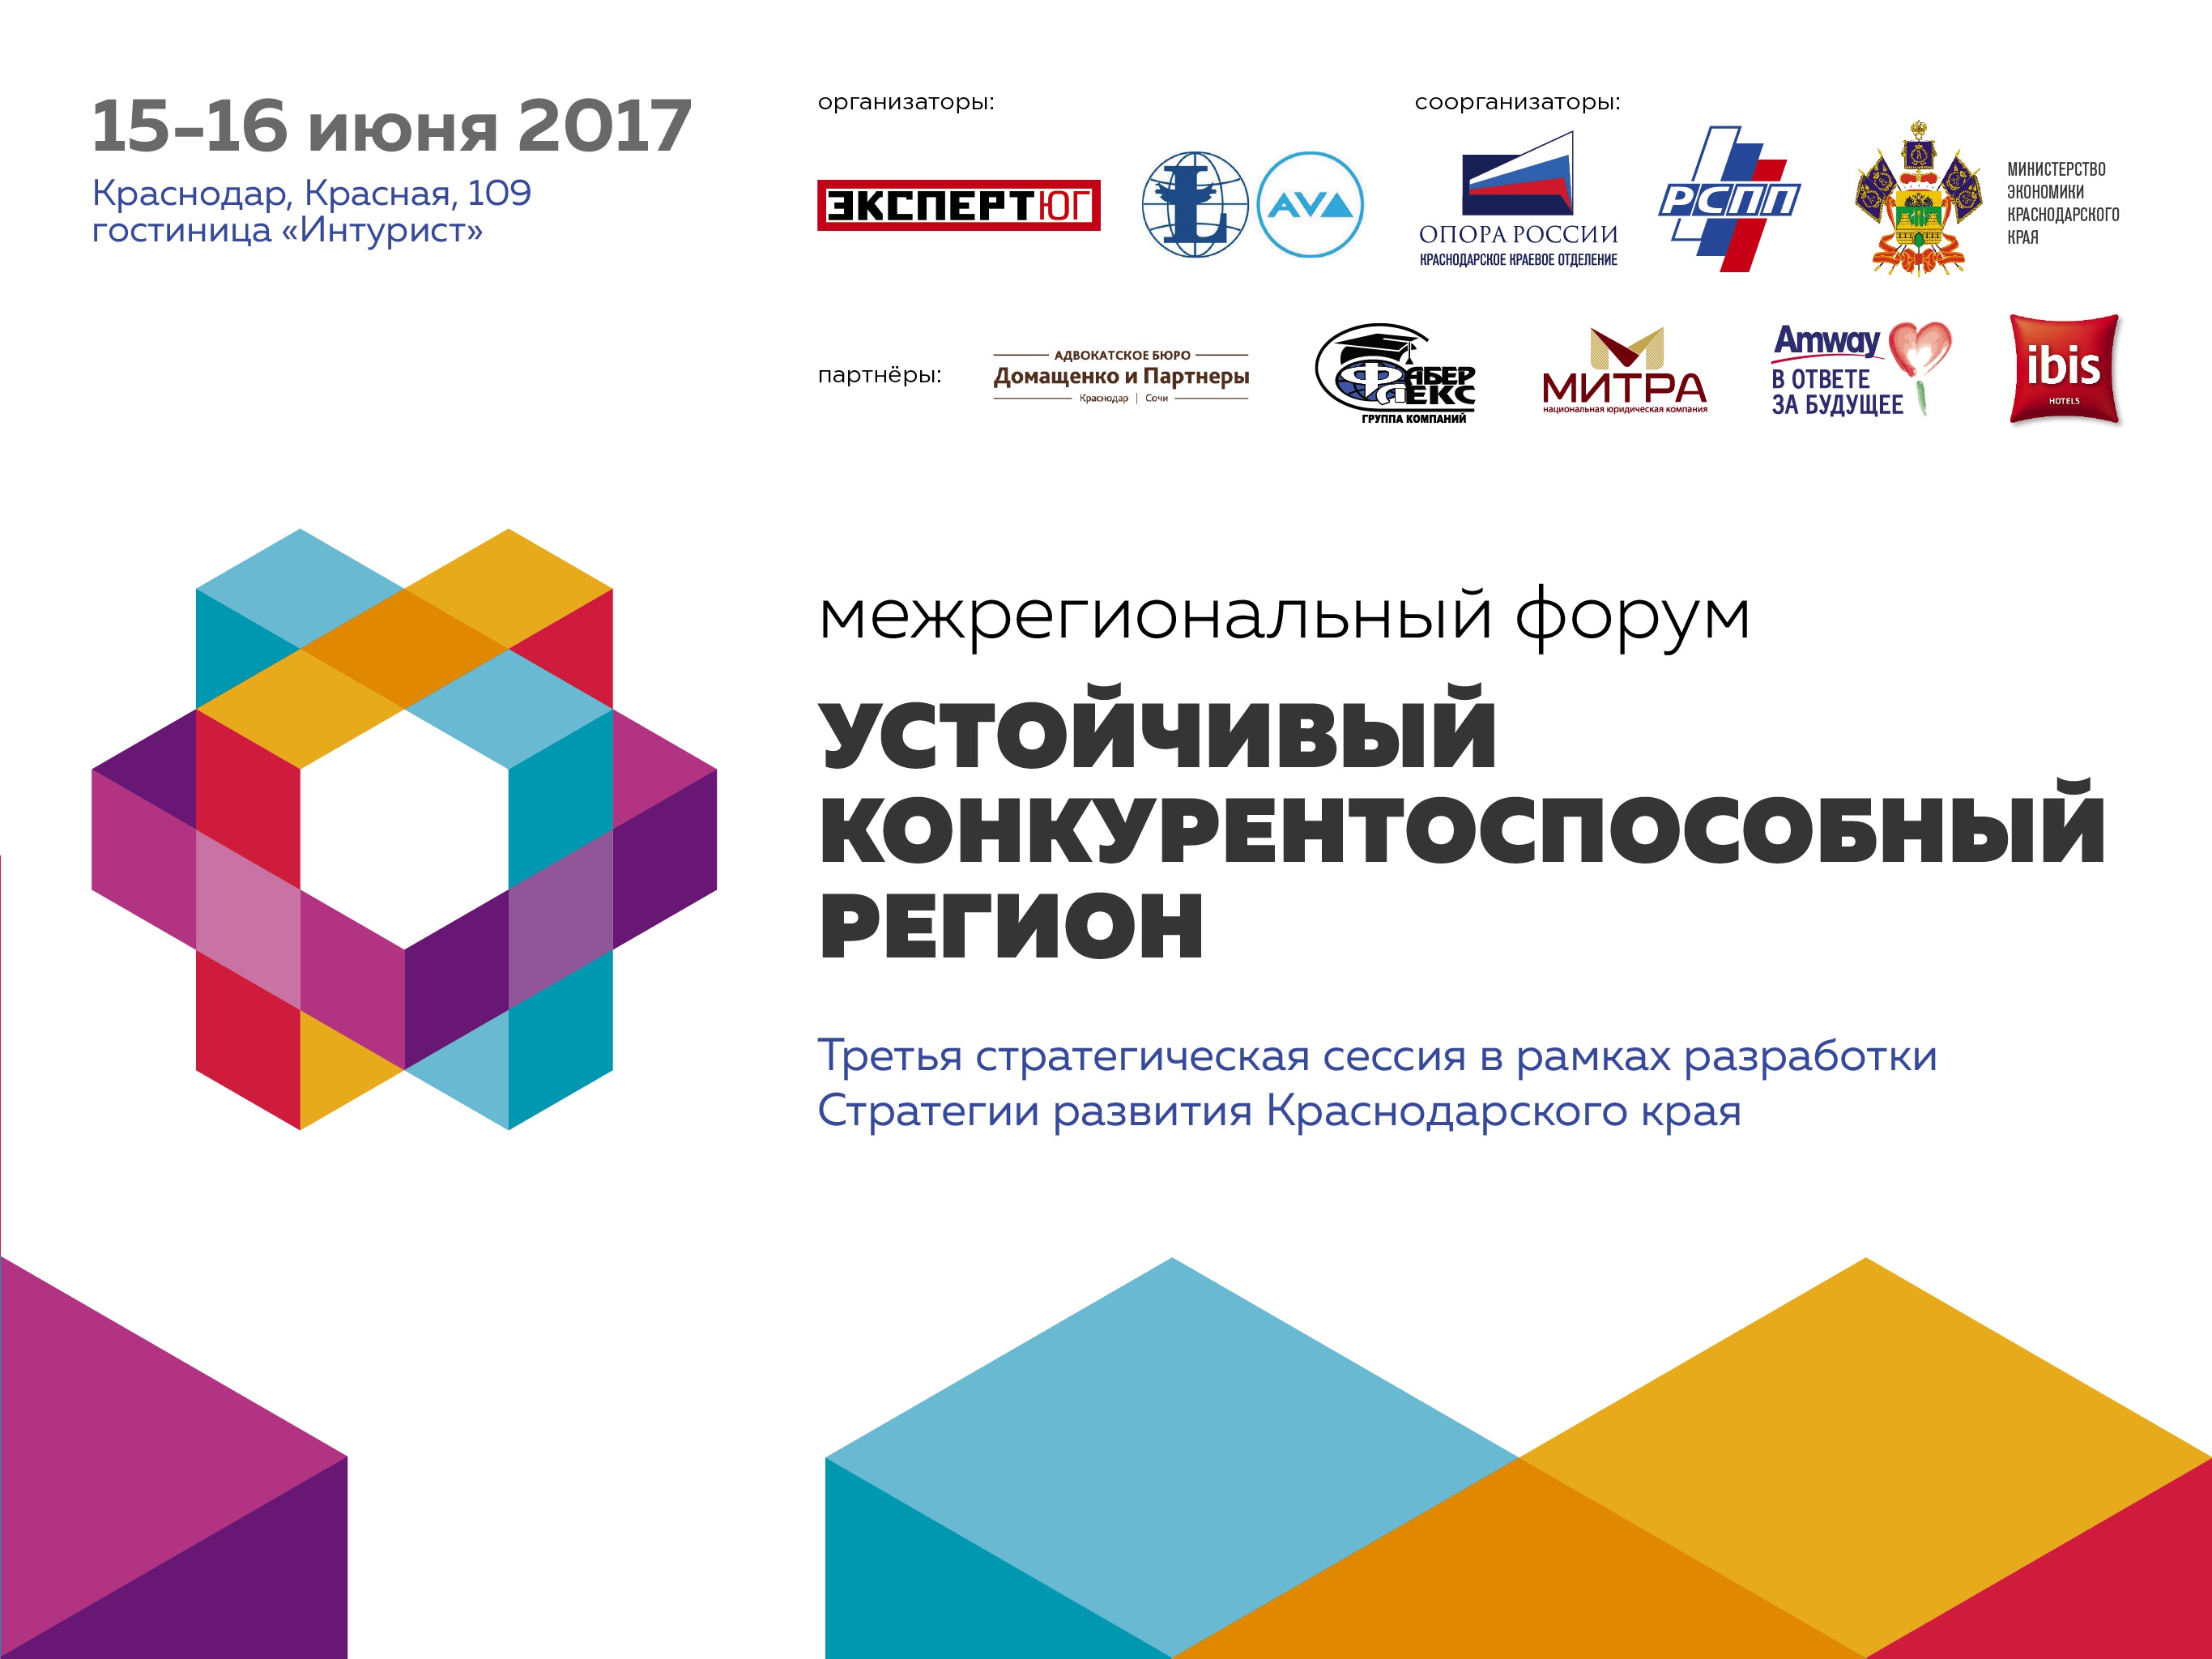 На Форуме в Краснодаре эксперты обсудят стратегию устойчивого развития региона